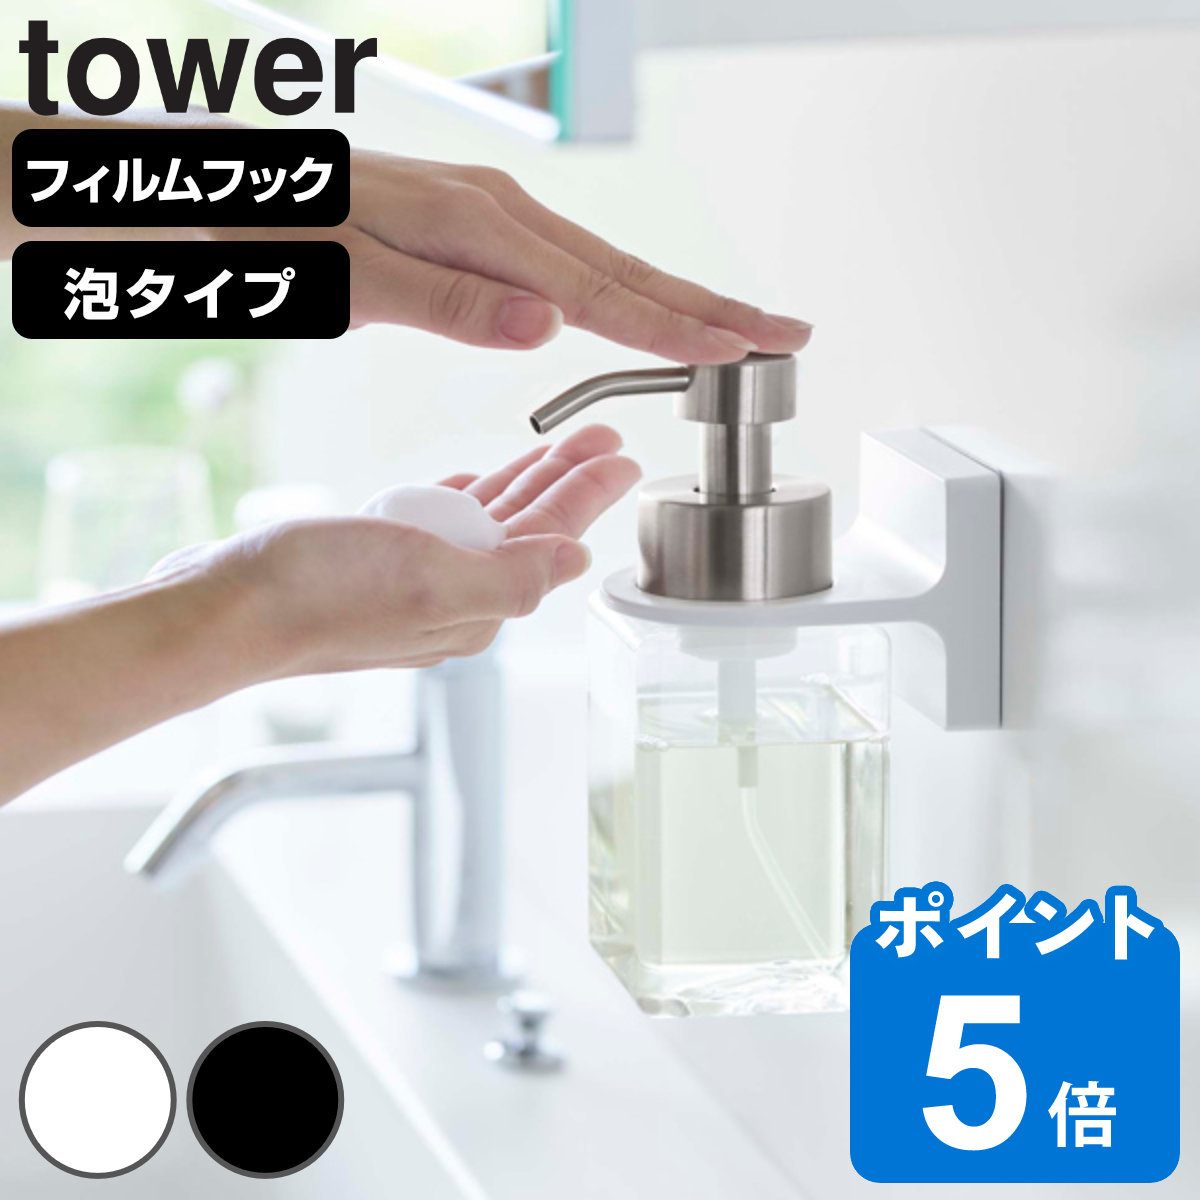 山崎実業 tower フィルムフックディスペンサーホルダー タワー 泡タイプ